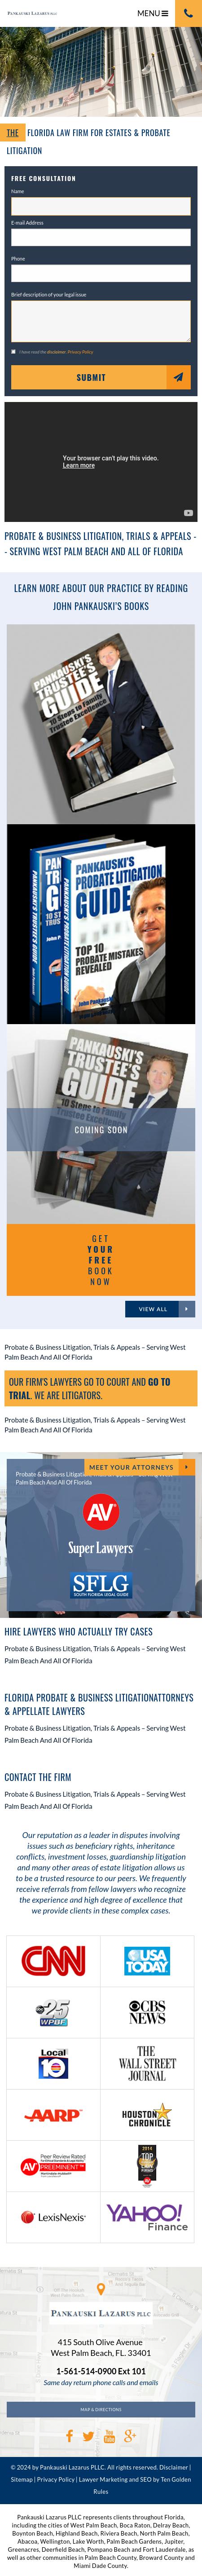 Pankauski Law Firm PLLC - West Palm Beach FL Lawyers